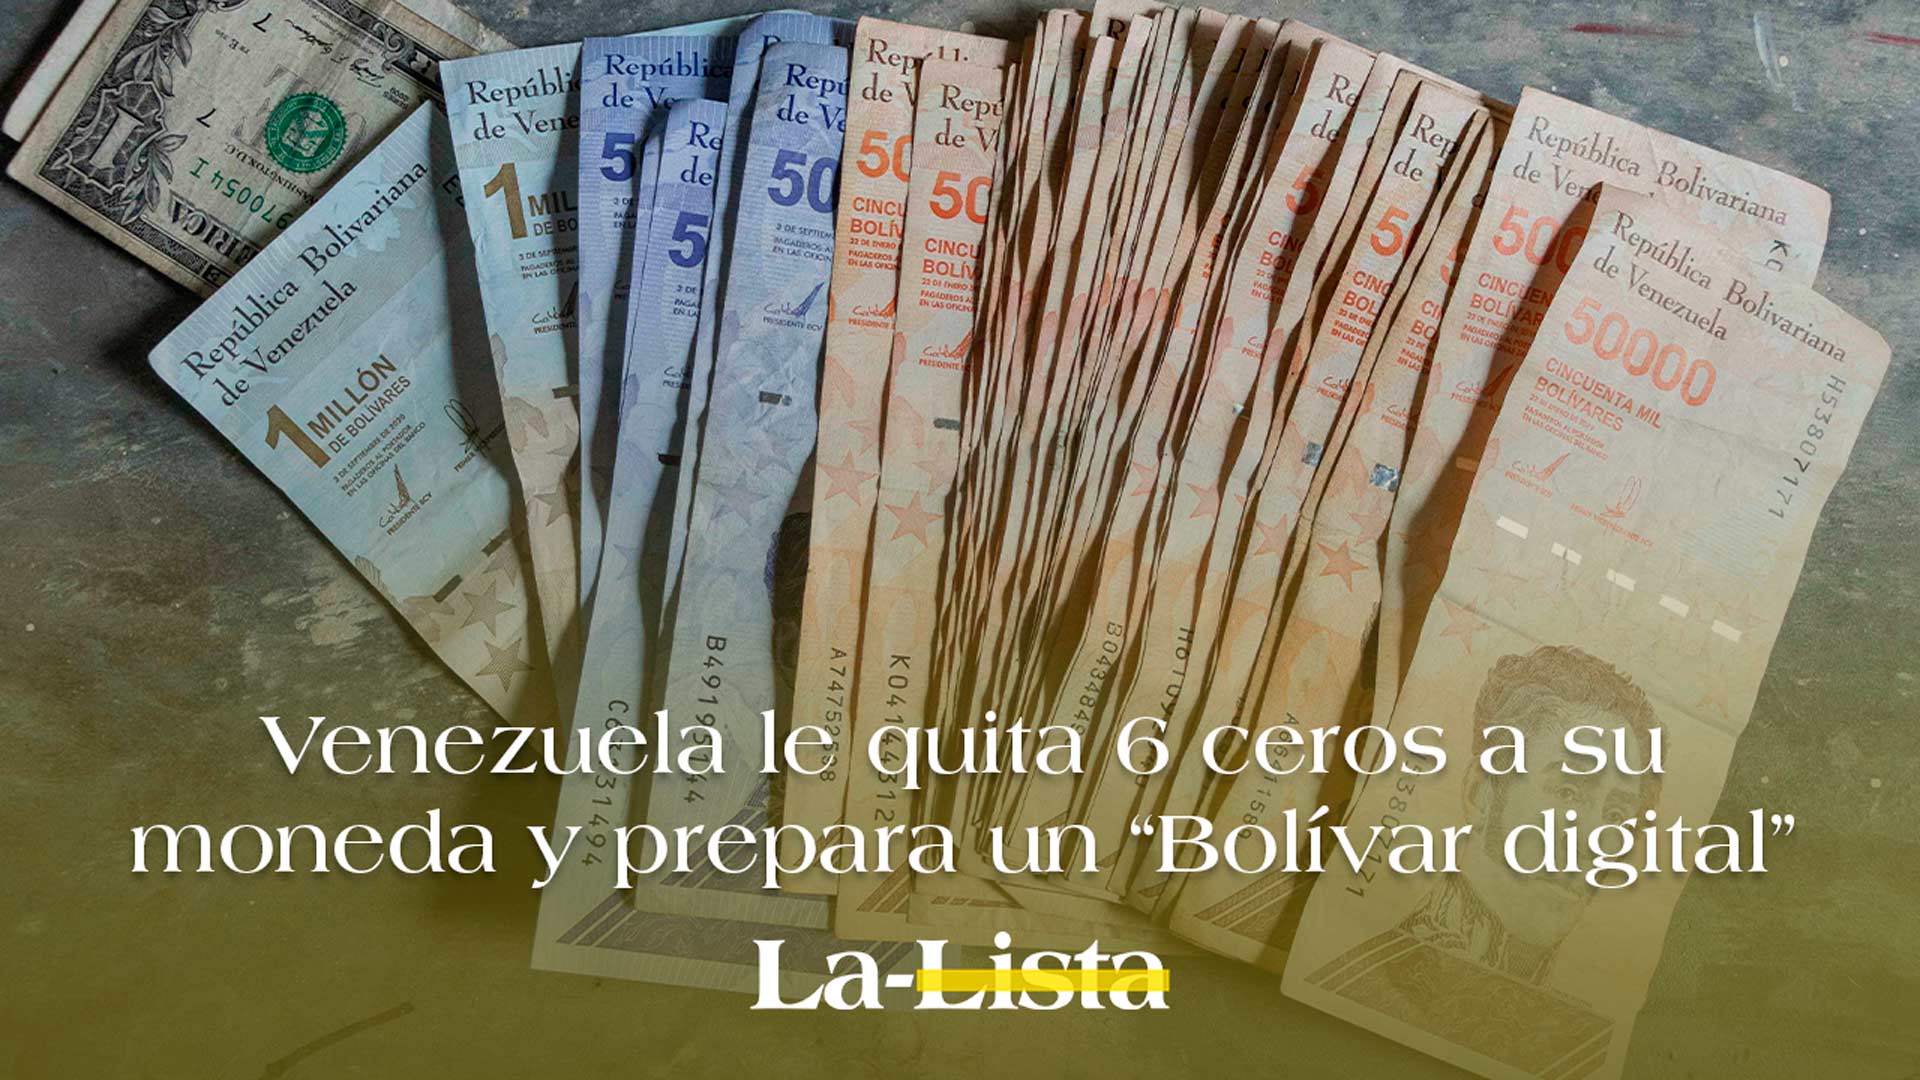 Venezuela le quita 6 ceros a su moneda y prepara un “Bolívar digital”